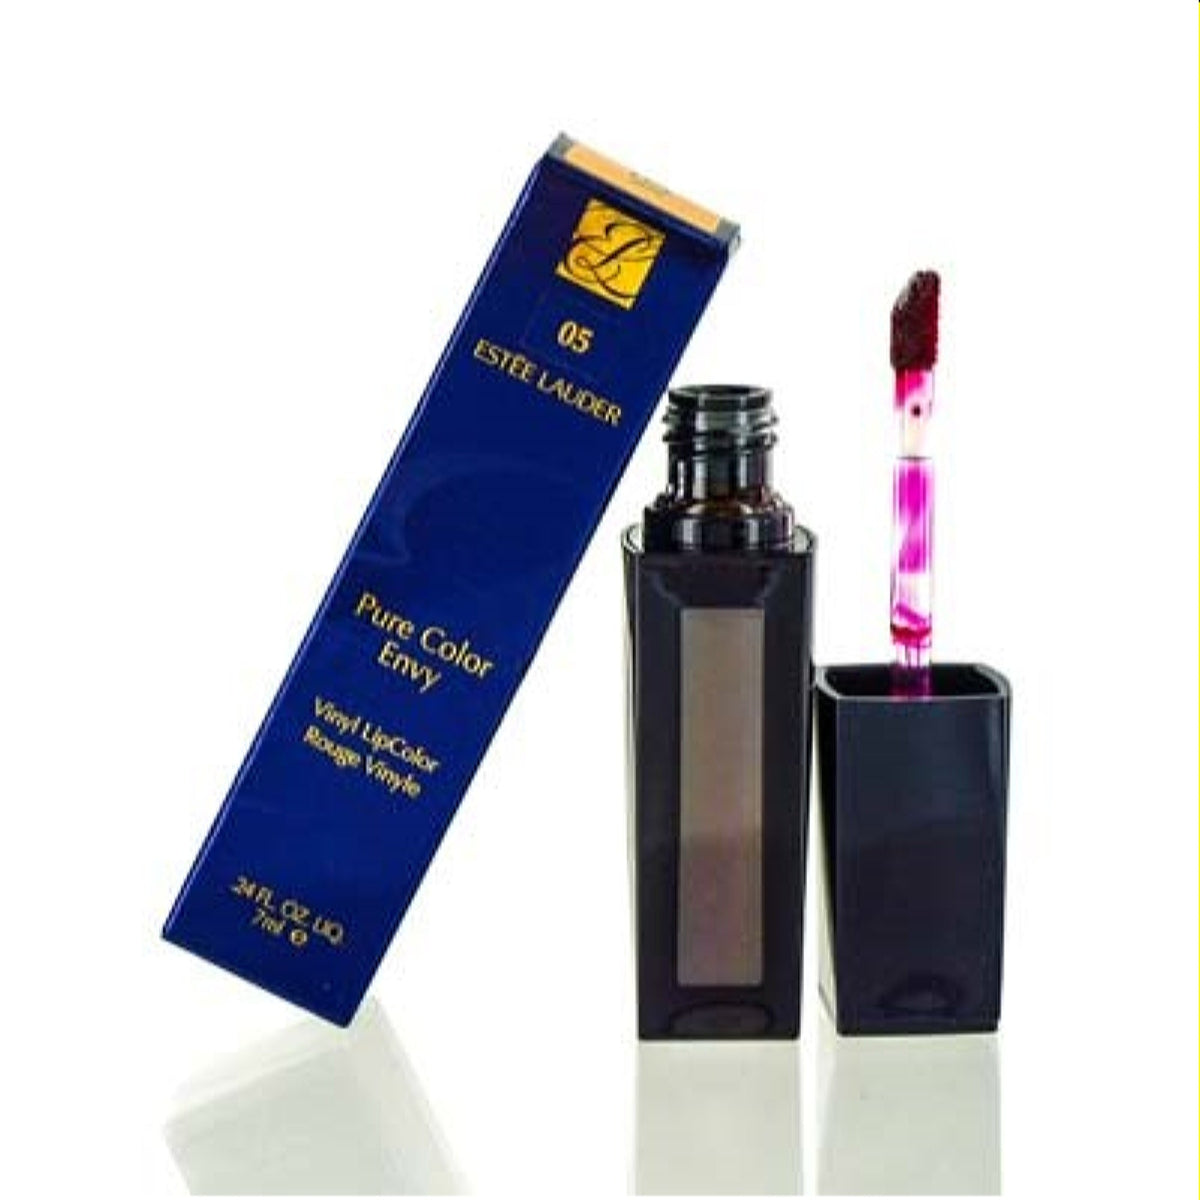 Estee Lauder Pure Color Envy Lipstick 05 Ripe 0.12 Oz  RJR4-05